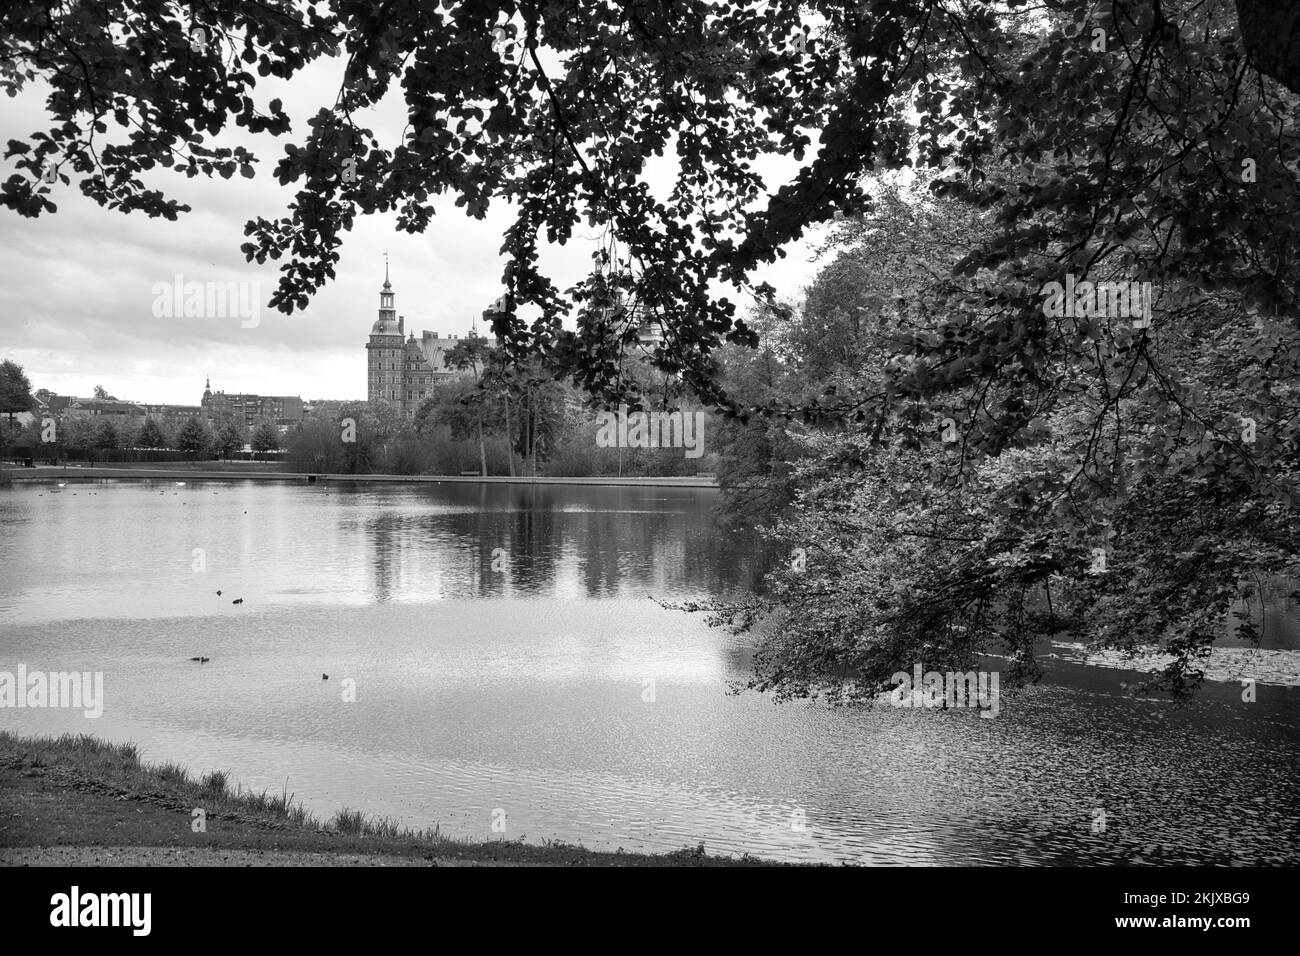 Parque del castillo de Frederiksborg en blanco y negro, con el lago creado, en el fondo el castillo. Caminar en Dinamarca Foto de stock